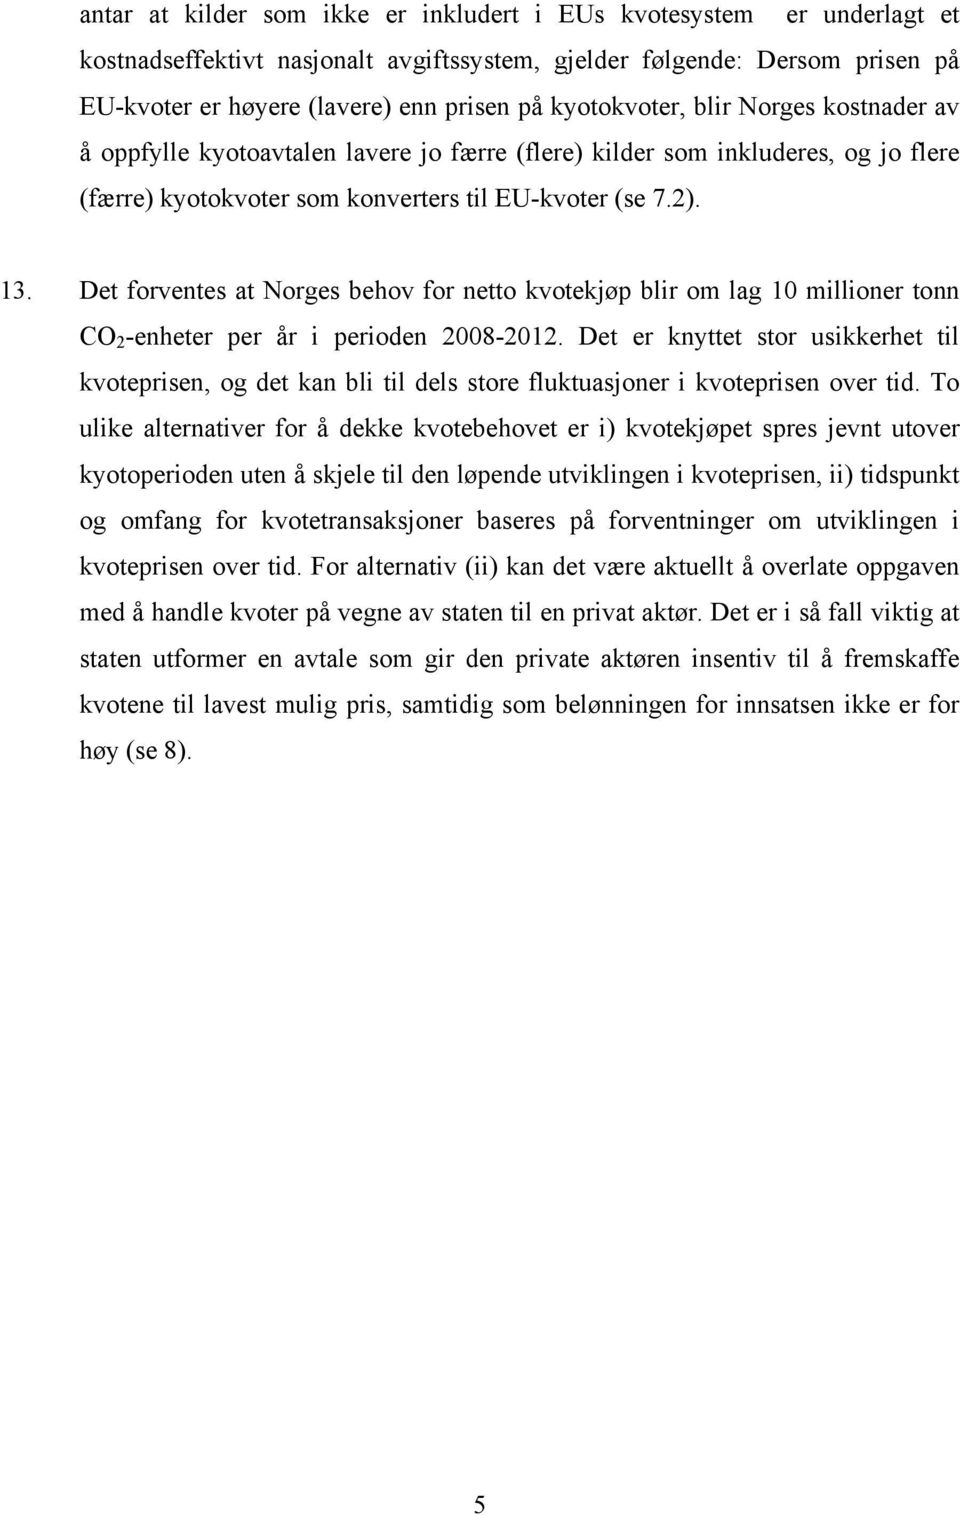 Det forventes at Norges behov for netto kvotekjøp blir om lag 10 millioner tonn CO 2 -enheter per år i perioden 2008-2012.